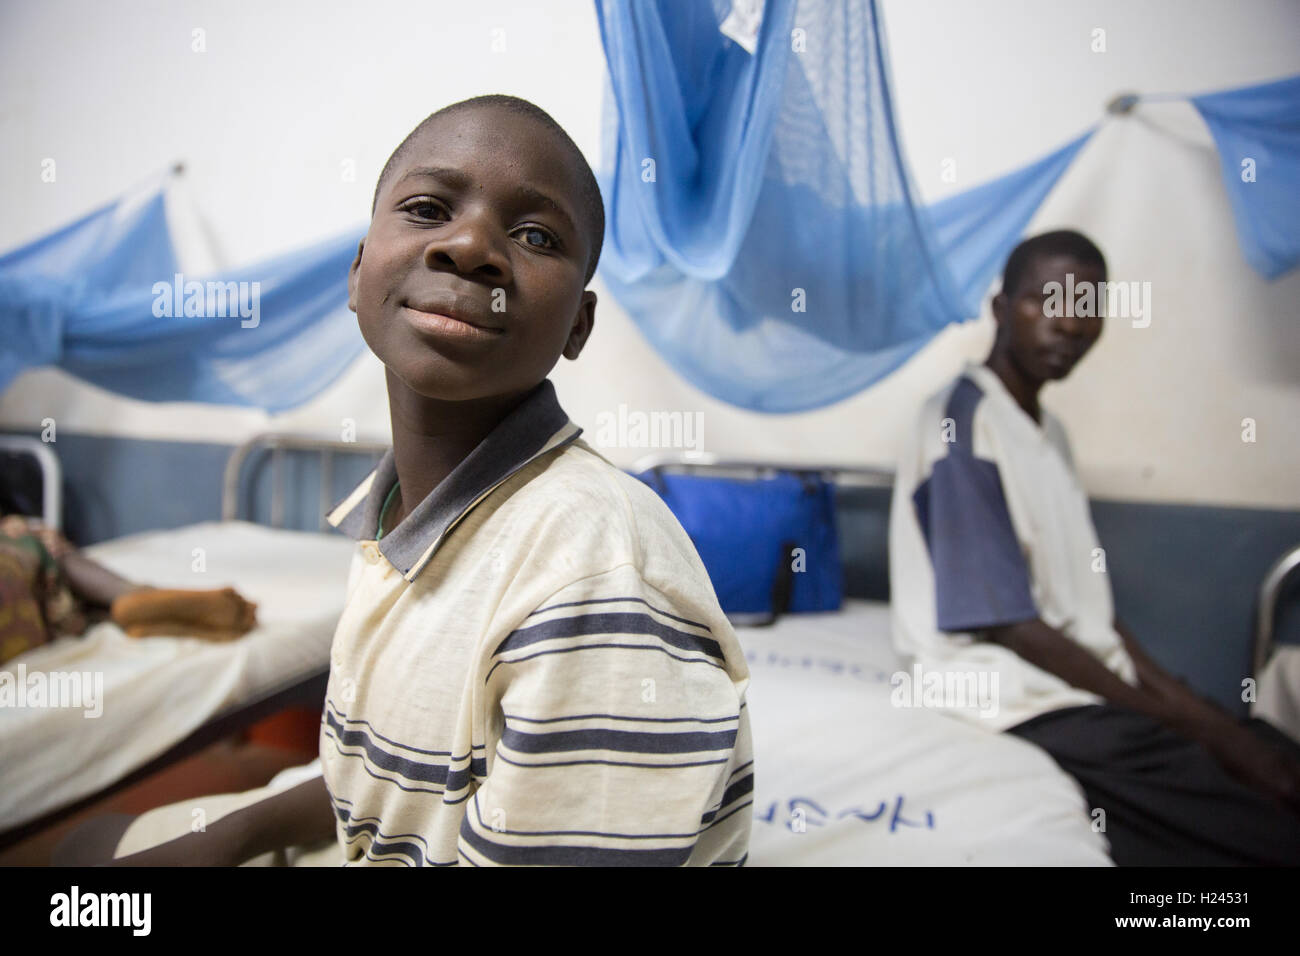 Hôpital Ribaue, Ribaue, province de Nampula, Mozambique, Août 2015 : Saide Antonio attend que sa deuxième opération de la cataracte. Photo de Mike Goldwater Banque D'Images